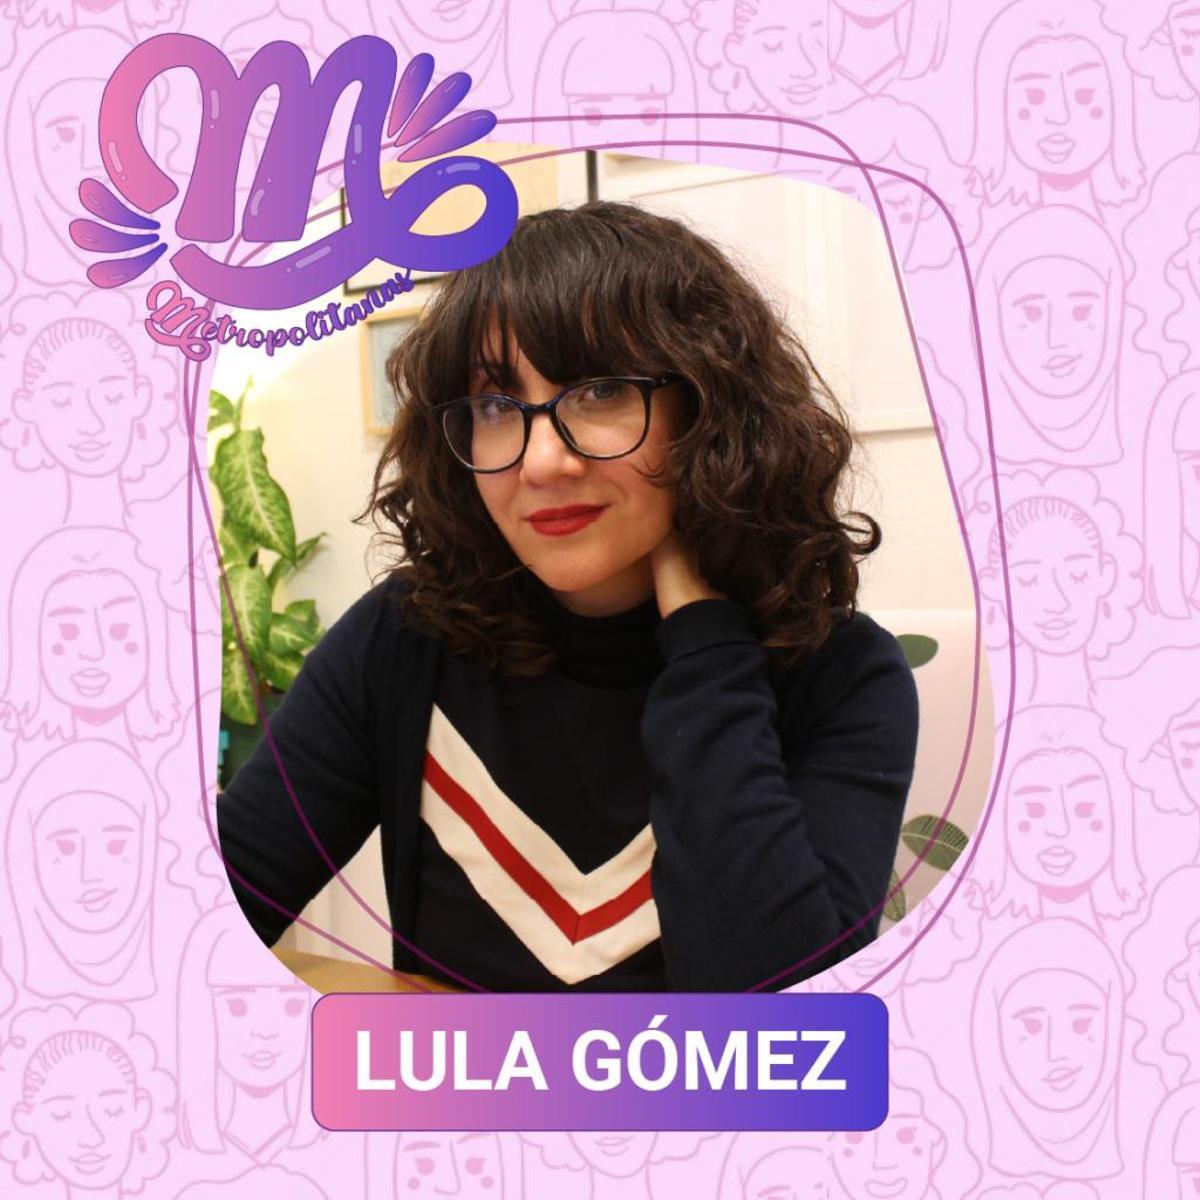 Lula Gómez